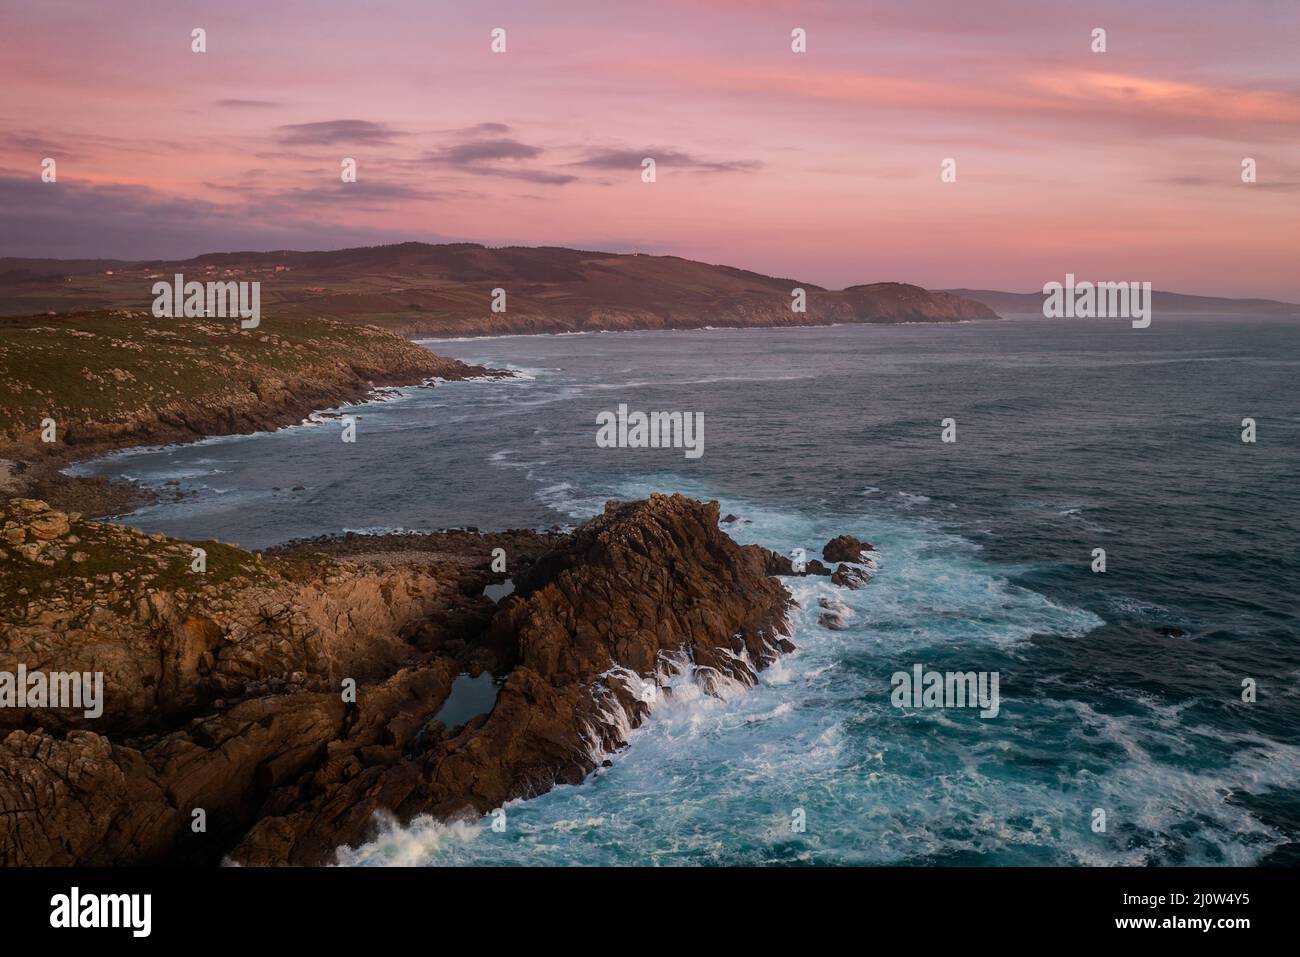 Vue sur les drones du Cap Tourinan au coucher du soleil avec des nuages roses, en Espagne Banque D'Images